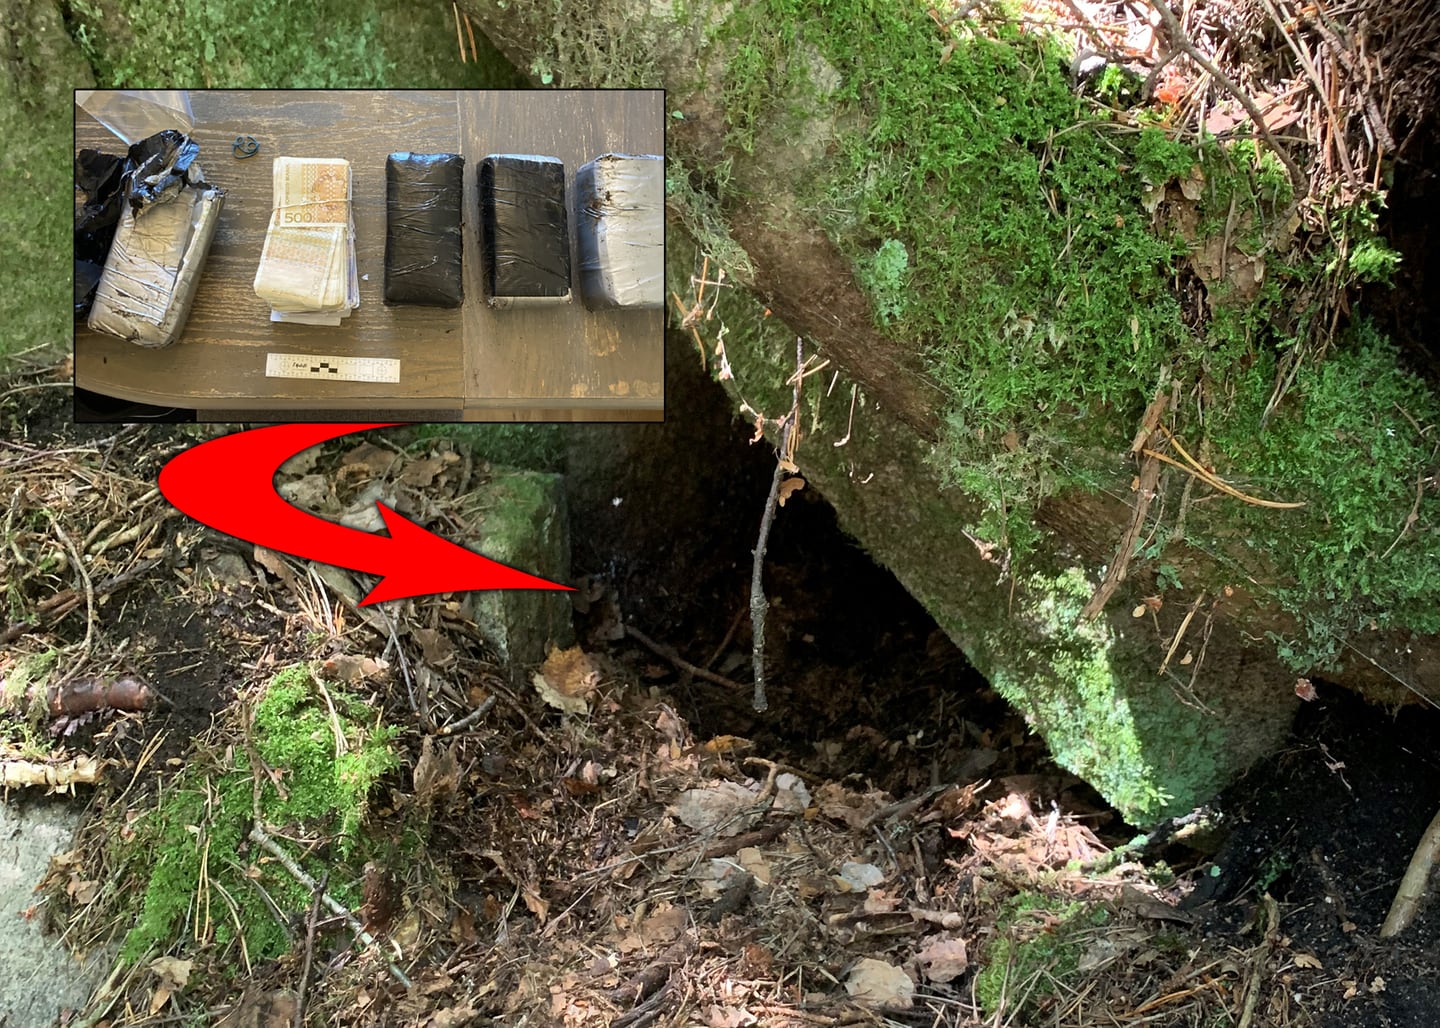 Pengene ble funnet i dette hulrommet i nærheten av Våpenhula i Mossemarka, en liten grotte hvor det ble lagret utstyr for motstandsbevegelsen Milorg under andre verdenskrig.